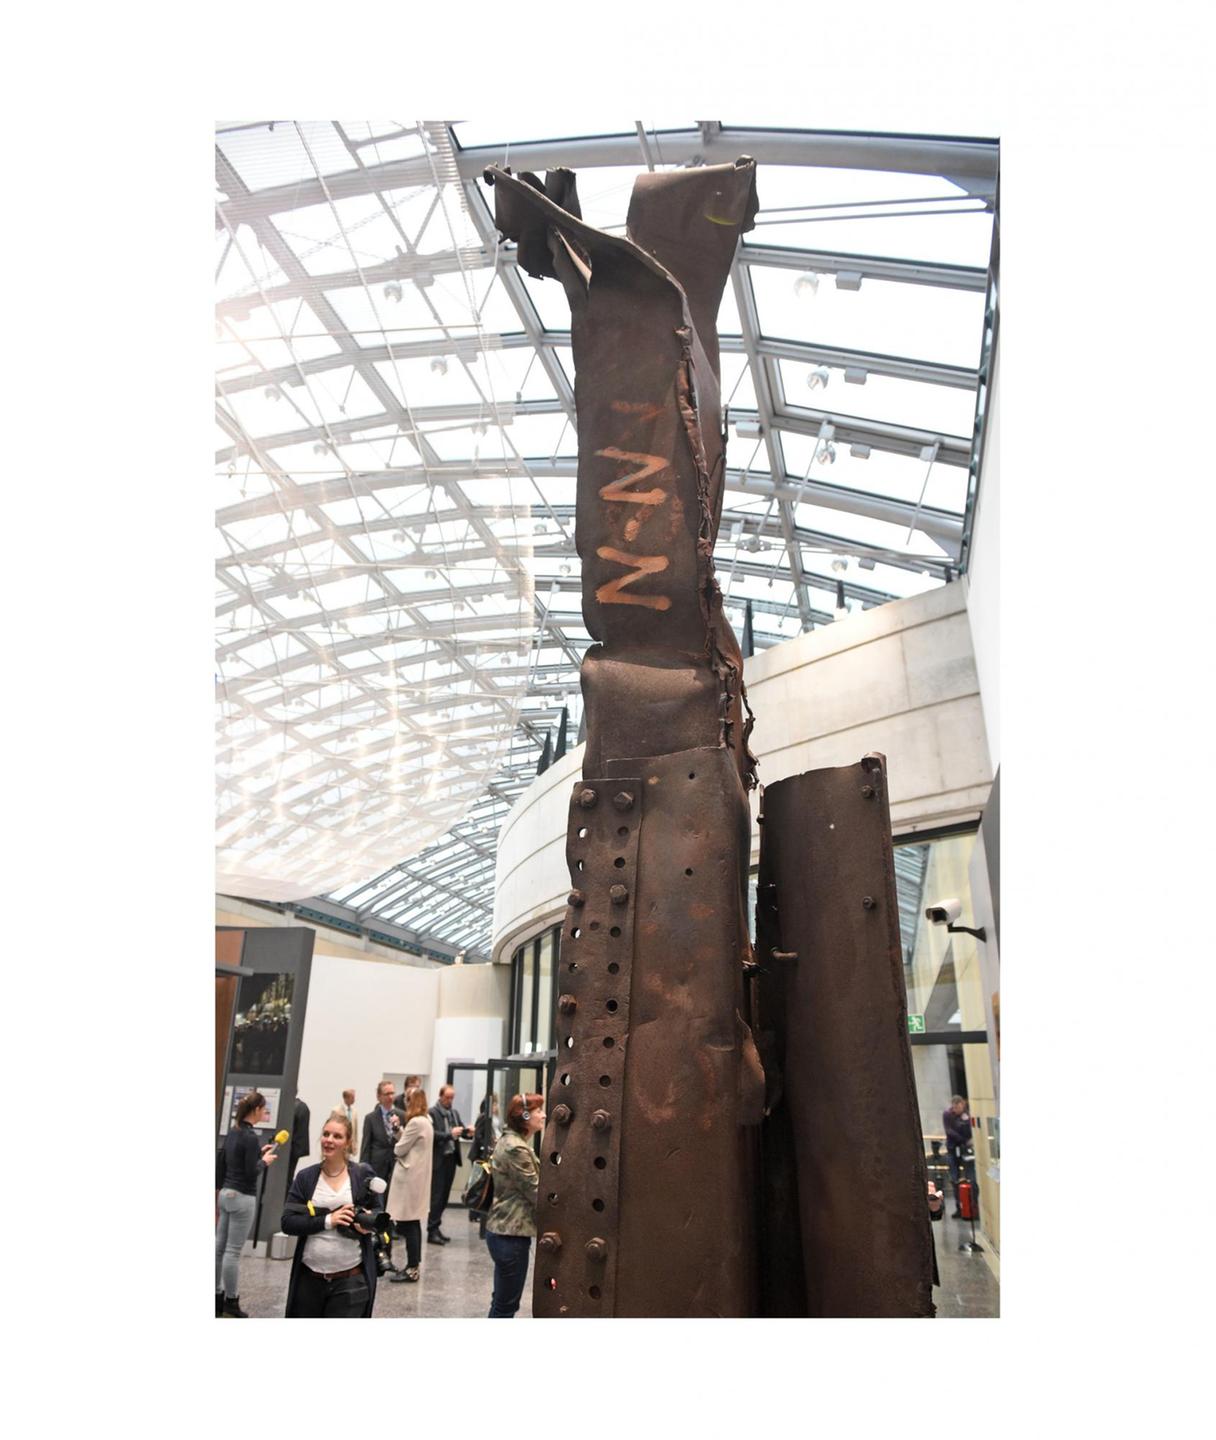 Ein Stahlträger aus dem World Trade Center in New York ist am im Haus der Geschichte in Bonn in der wiedereröffneten Dauerausstellung zu sehen.